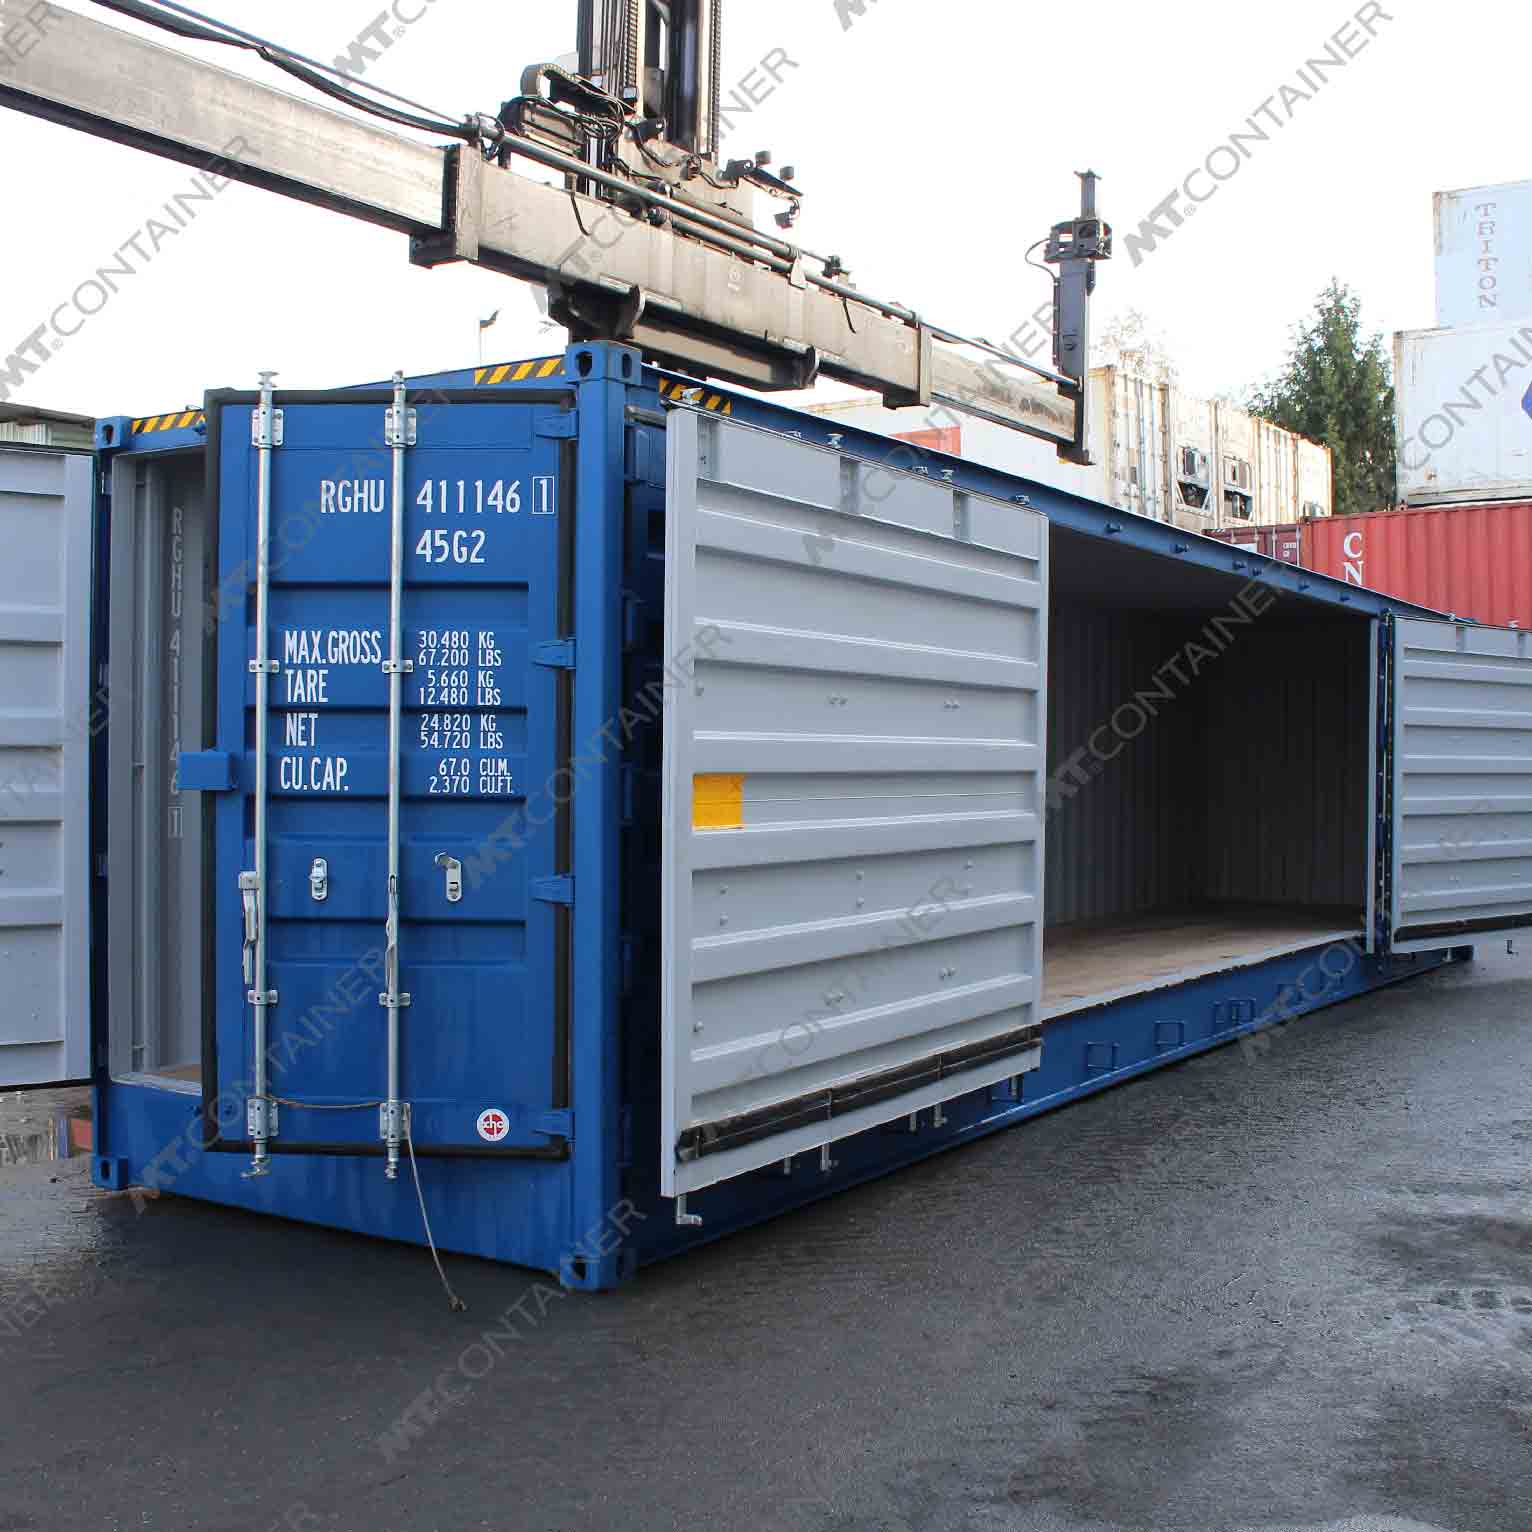 Ein blauer 40-Fuß-Open-Side-Door-Container mit der Kennung RGHU 411146-1 und weißen Schiebetüren auf der Seite.